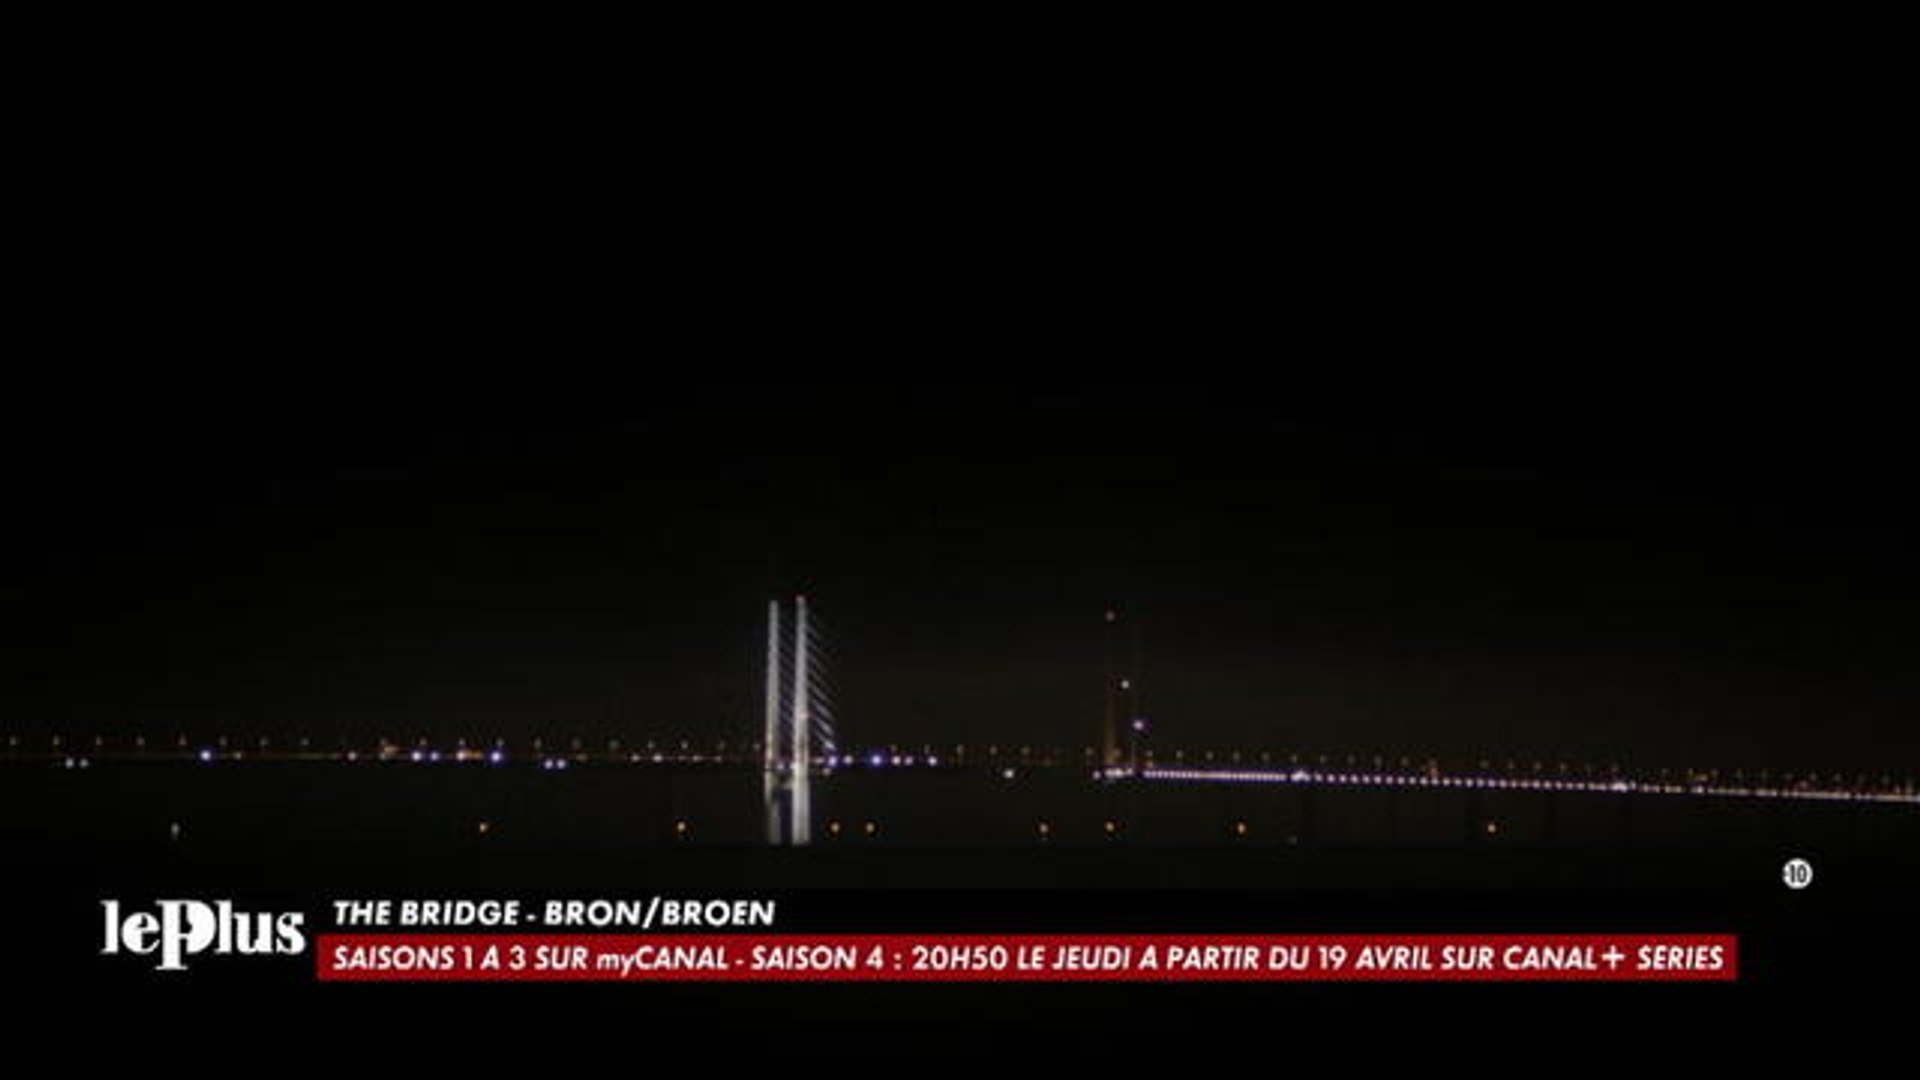 Le Plus - The Bridge Bron Broen - CANAL+ - Vidéo Dailymotion